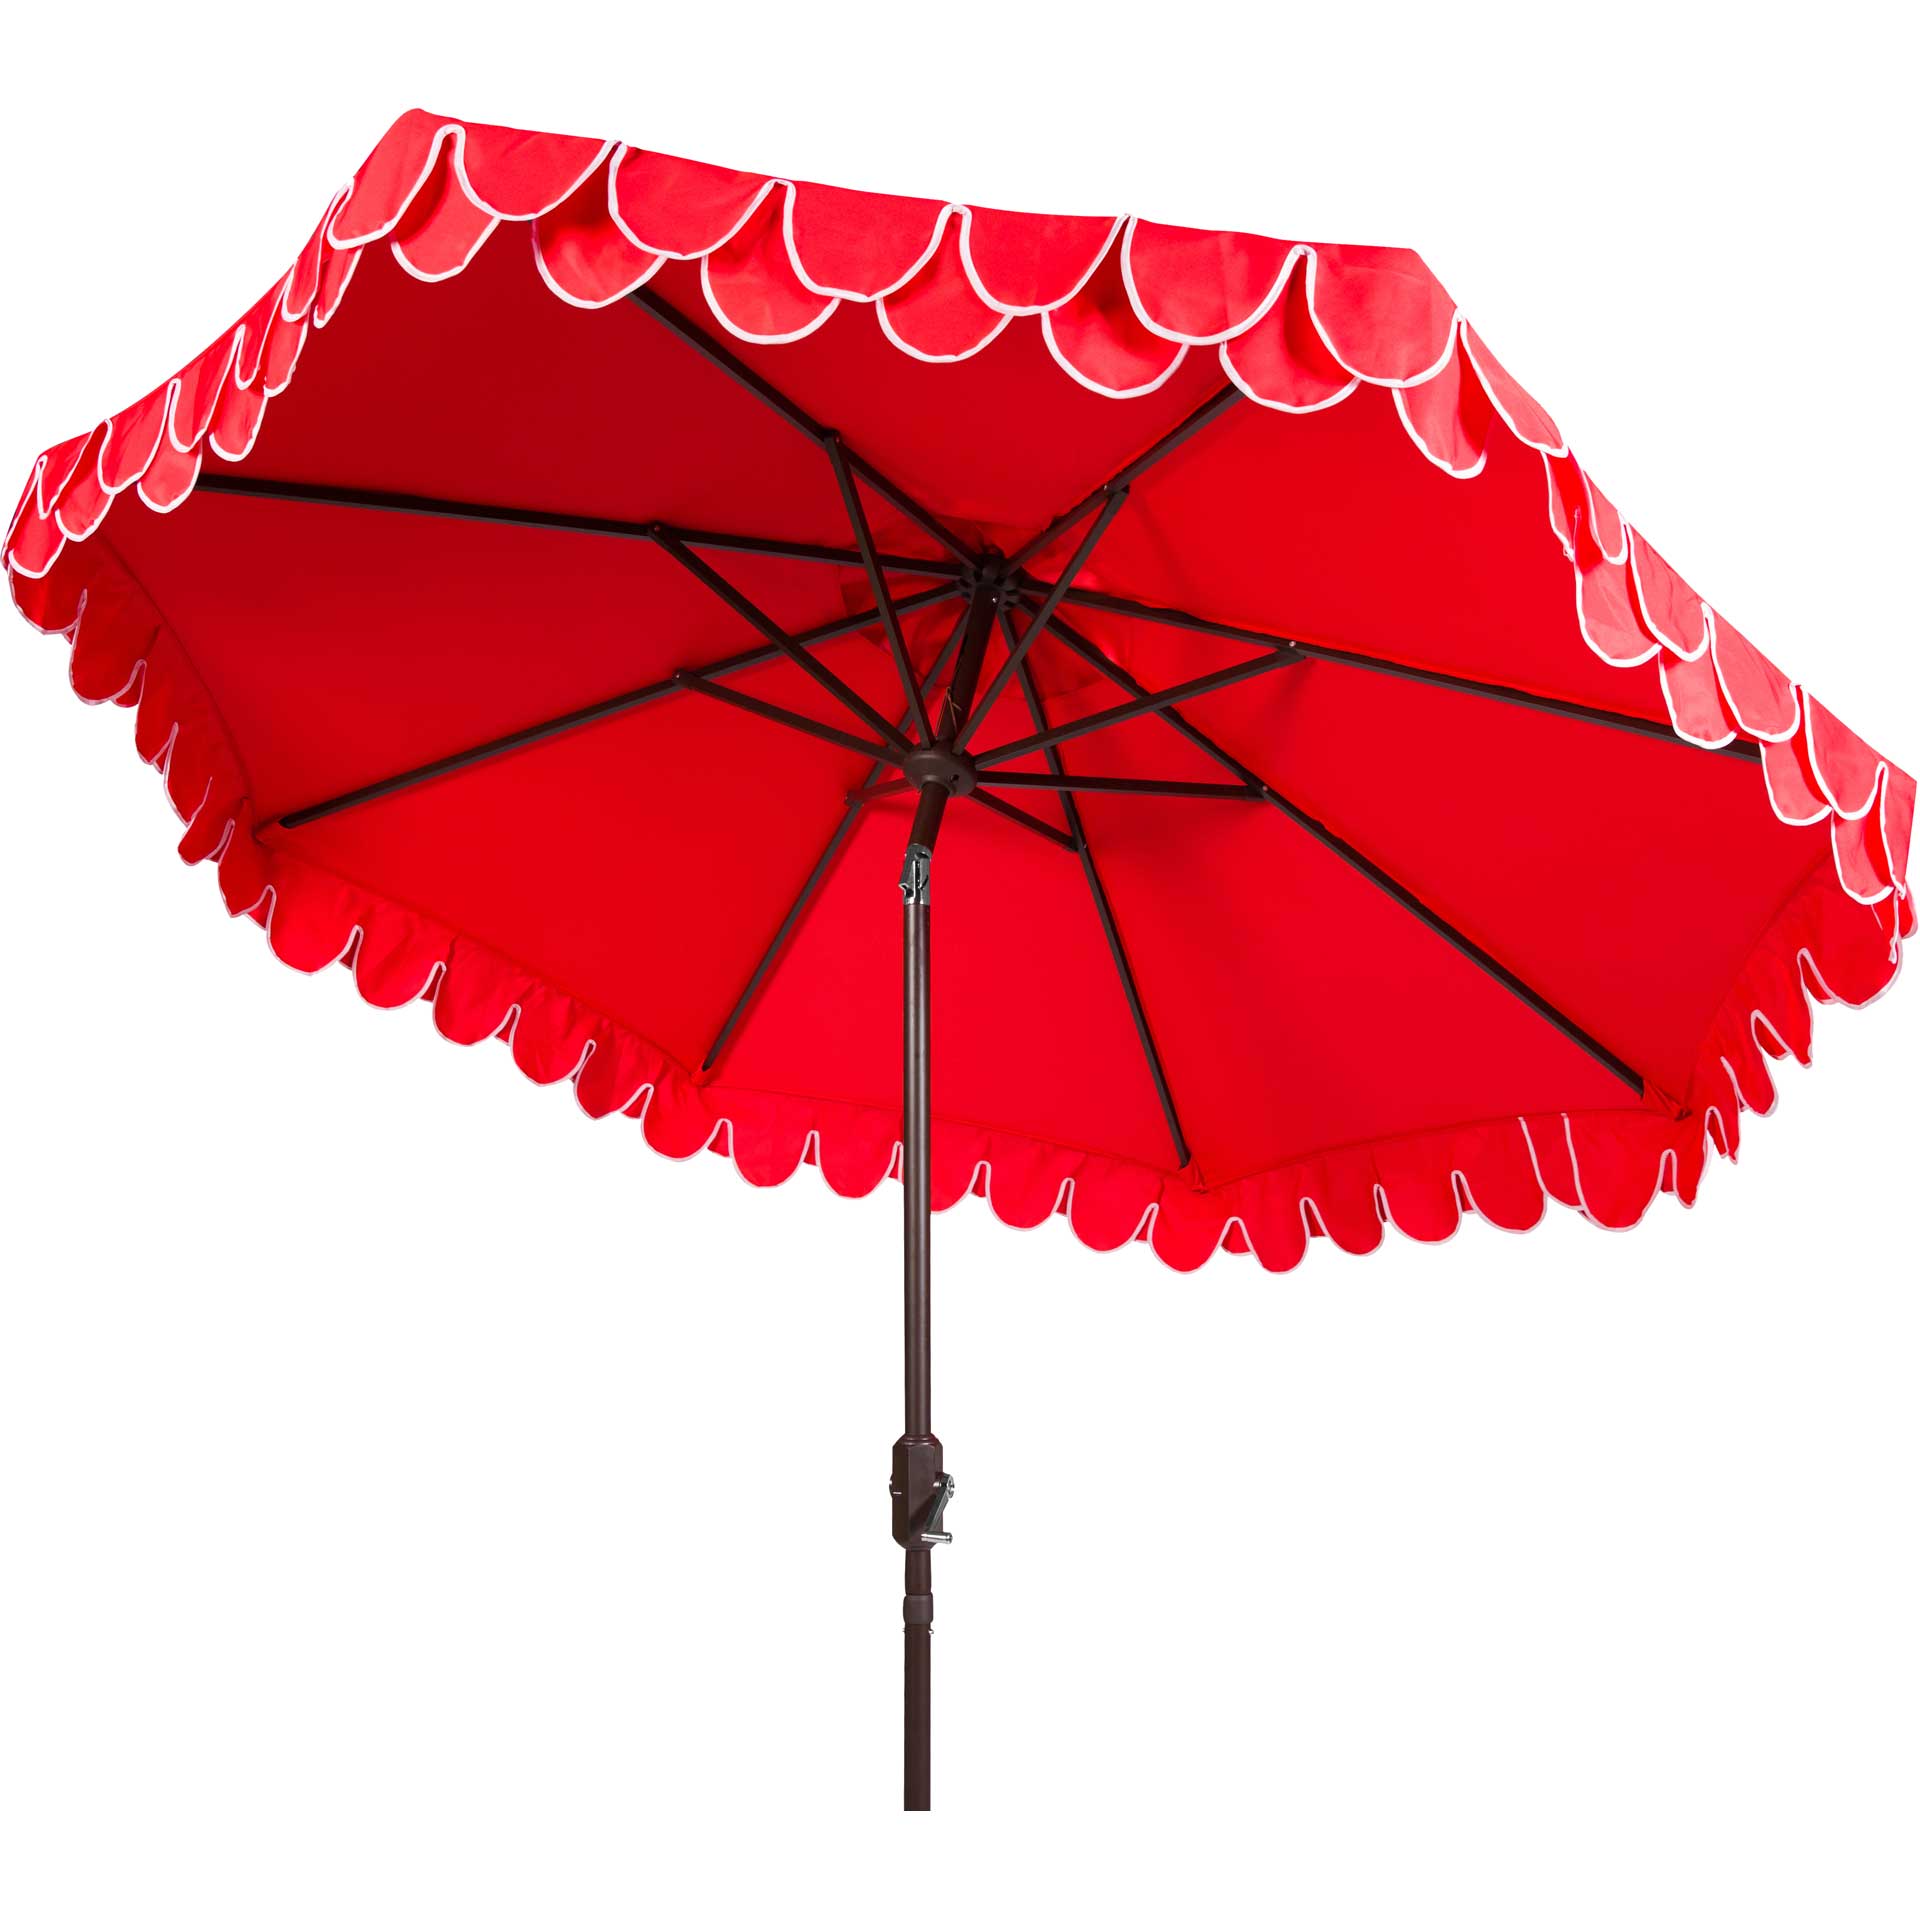 Electra Auto Tilt Umbrella Red/White